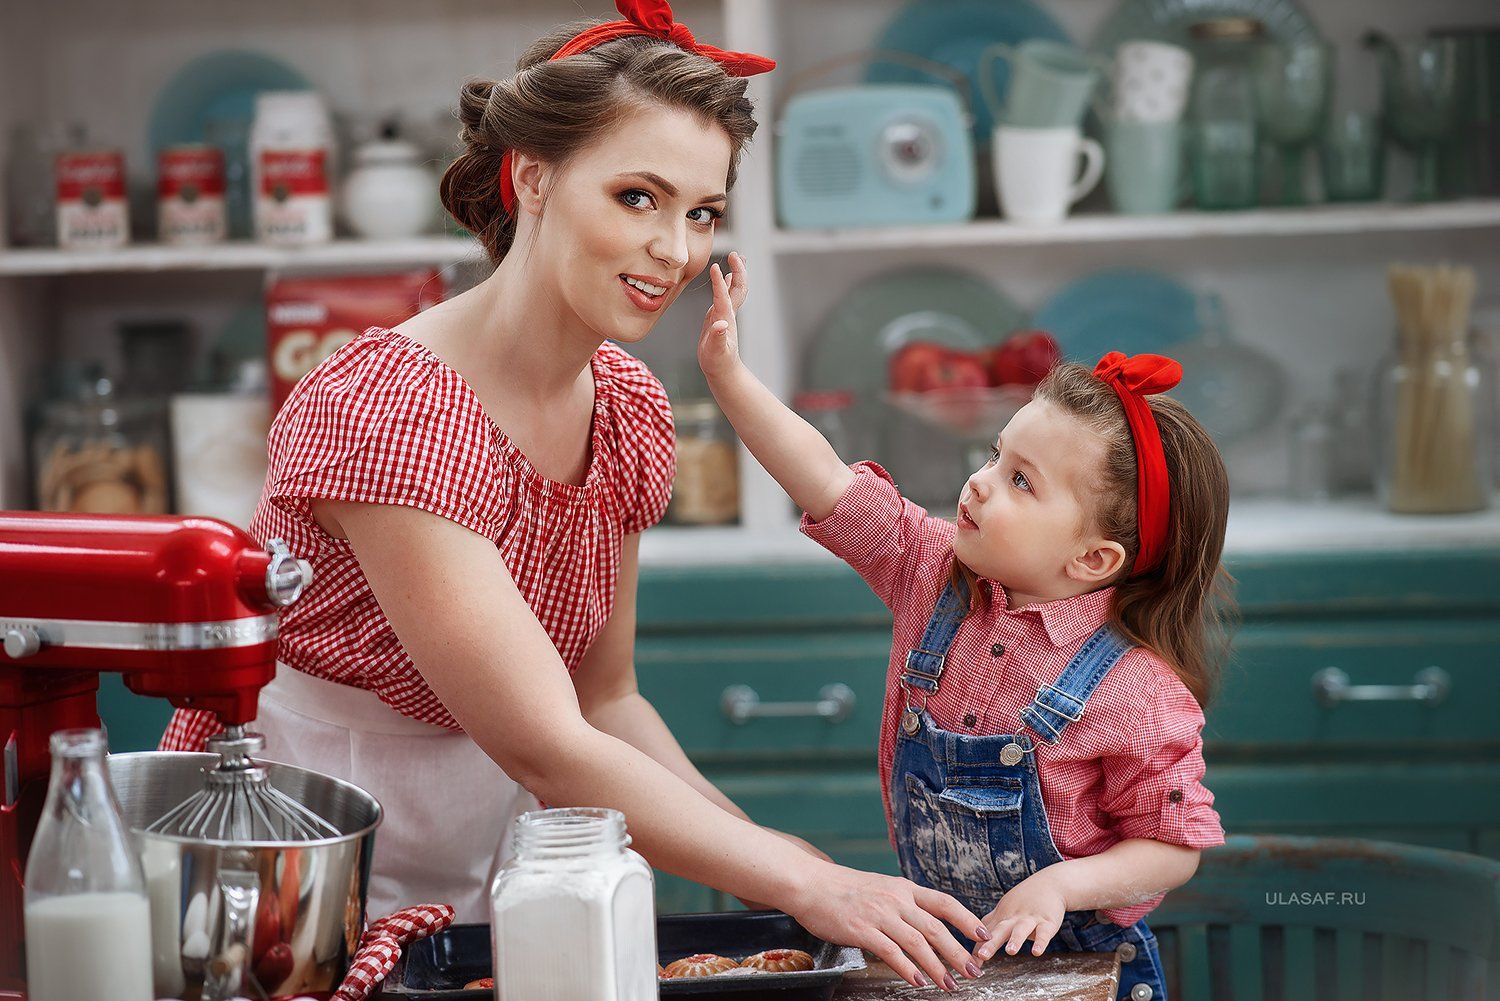 Фотосессия мама и дочка на кухне